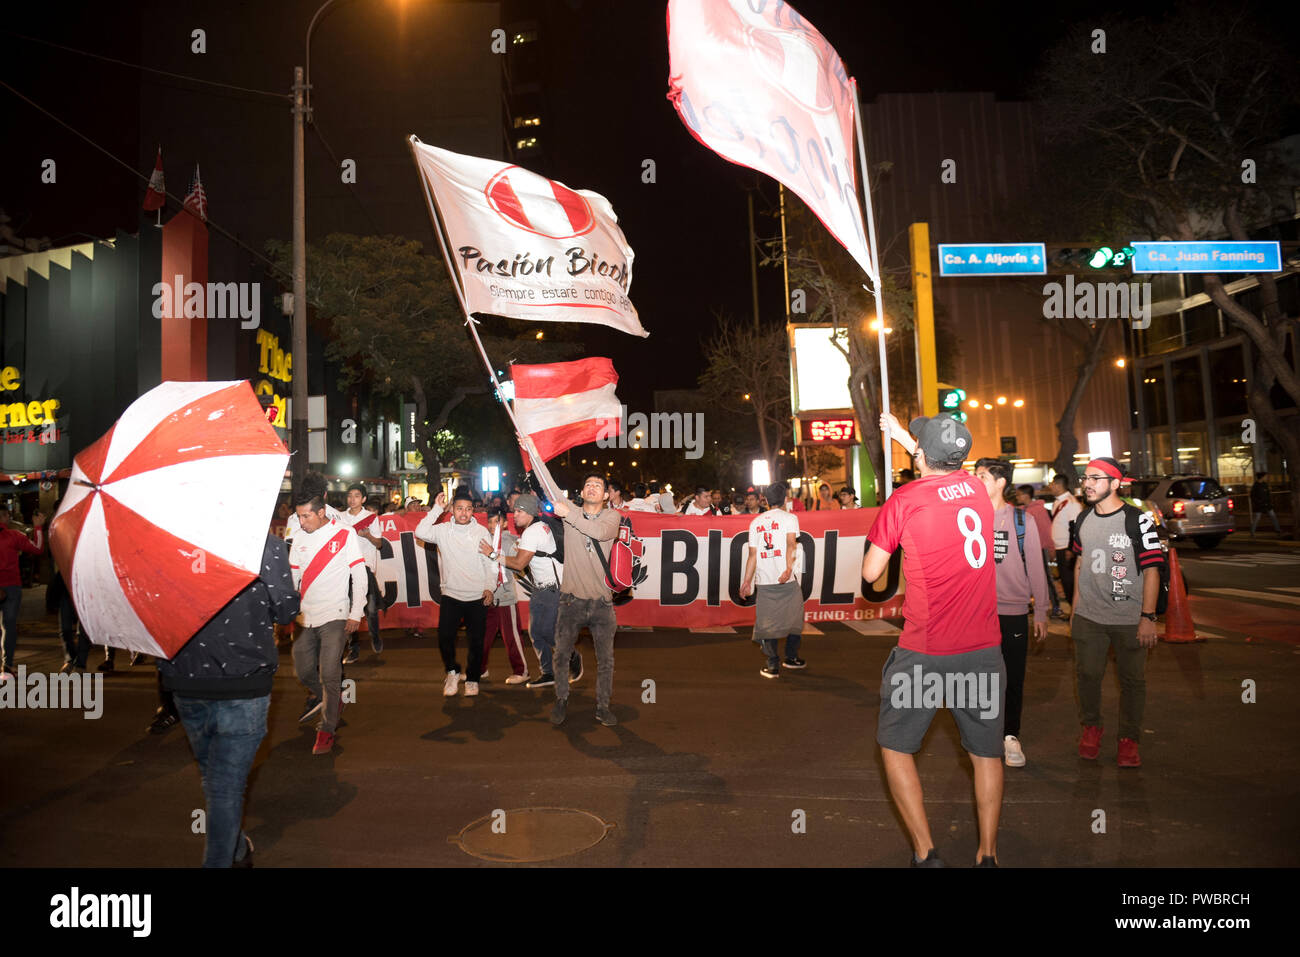 Fanaticism in Peru Peru vs. Chile Soccer. Stock Photo